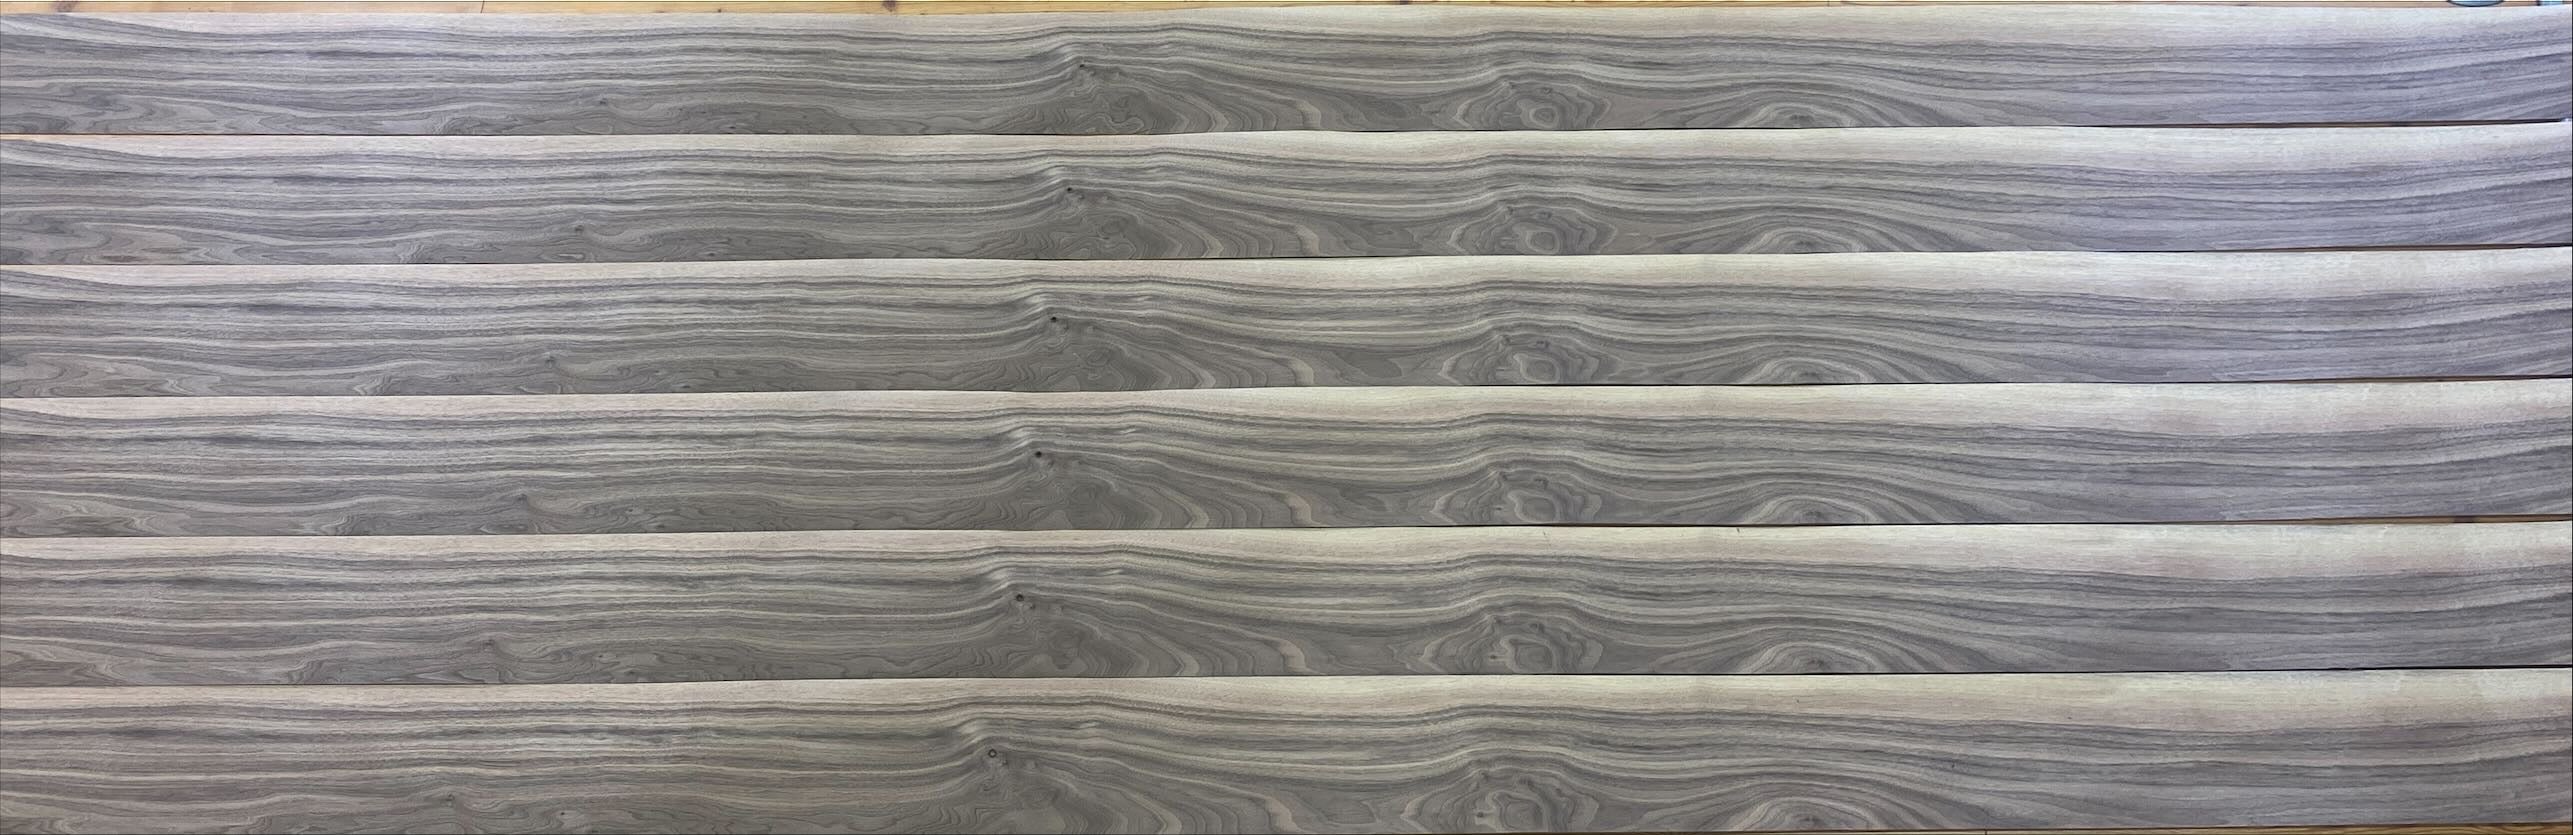 天然木　突板素材シリーズ　ウォールナット板柾込み (厚0.5mm程度、巾190mm程度、長3,500mm程度) 24枚セット